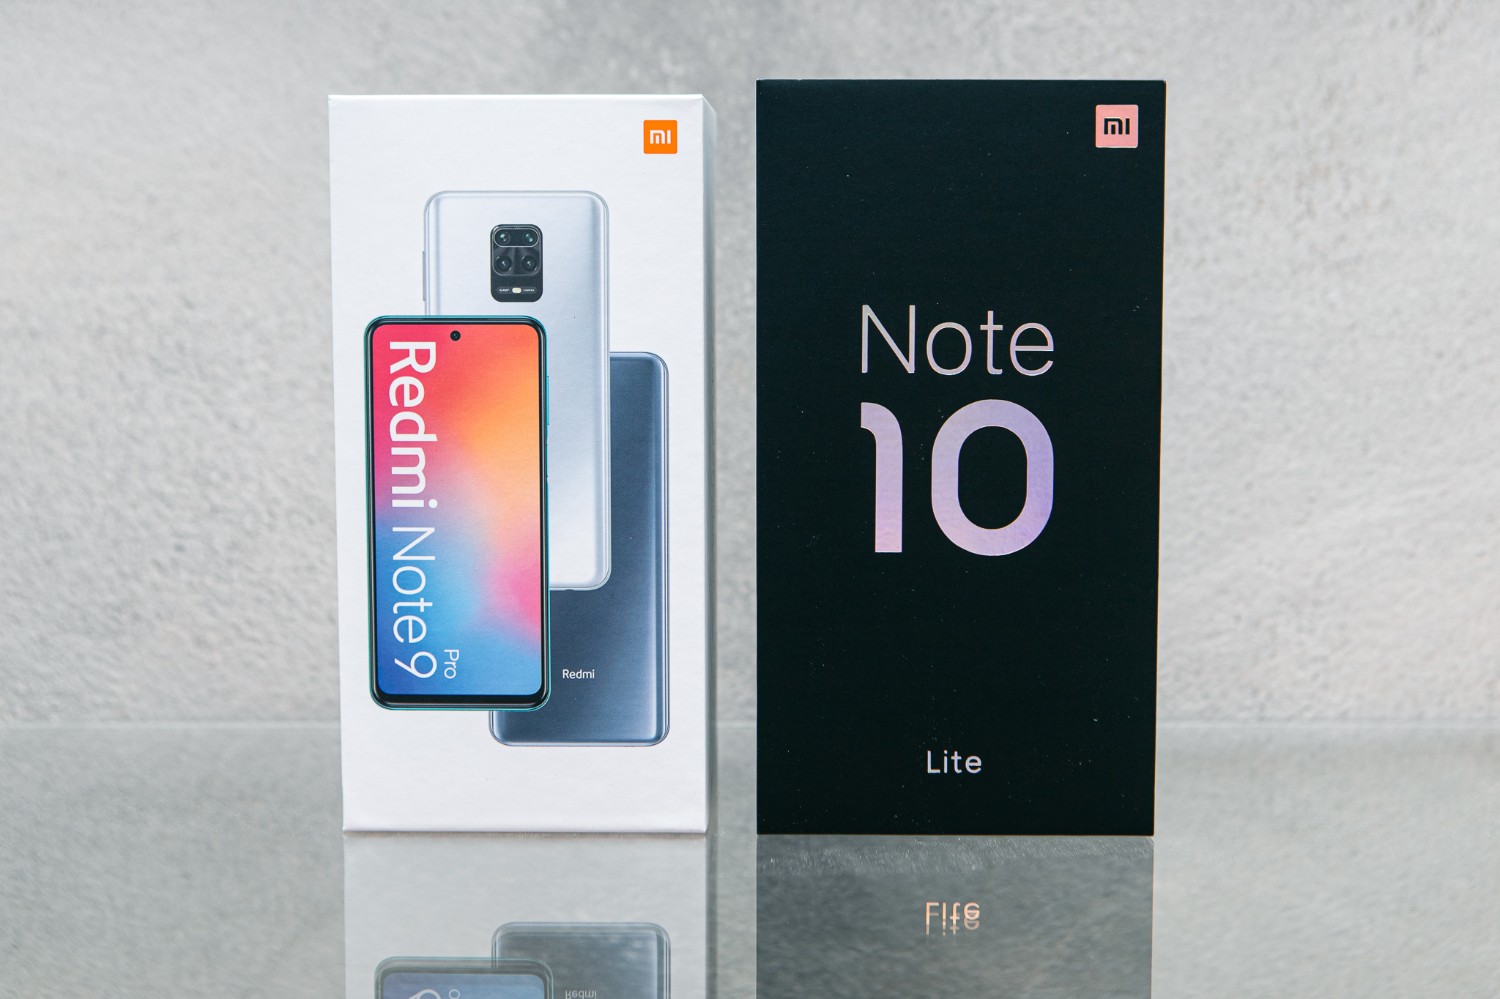 รีวิว เปรียบเทียบ Redmi Note 9 Pro และ Xiaomi Mi Note 10 Lite  เลือกตัวไหนดี? - Pantip